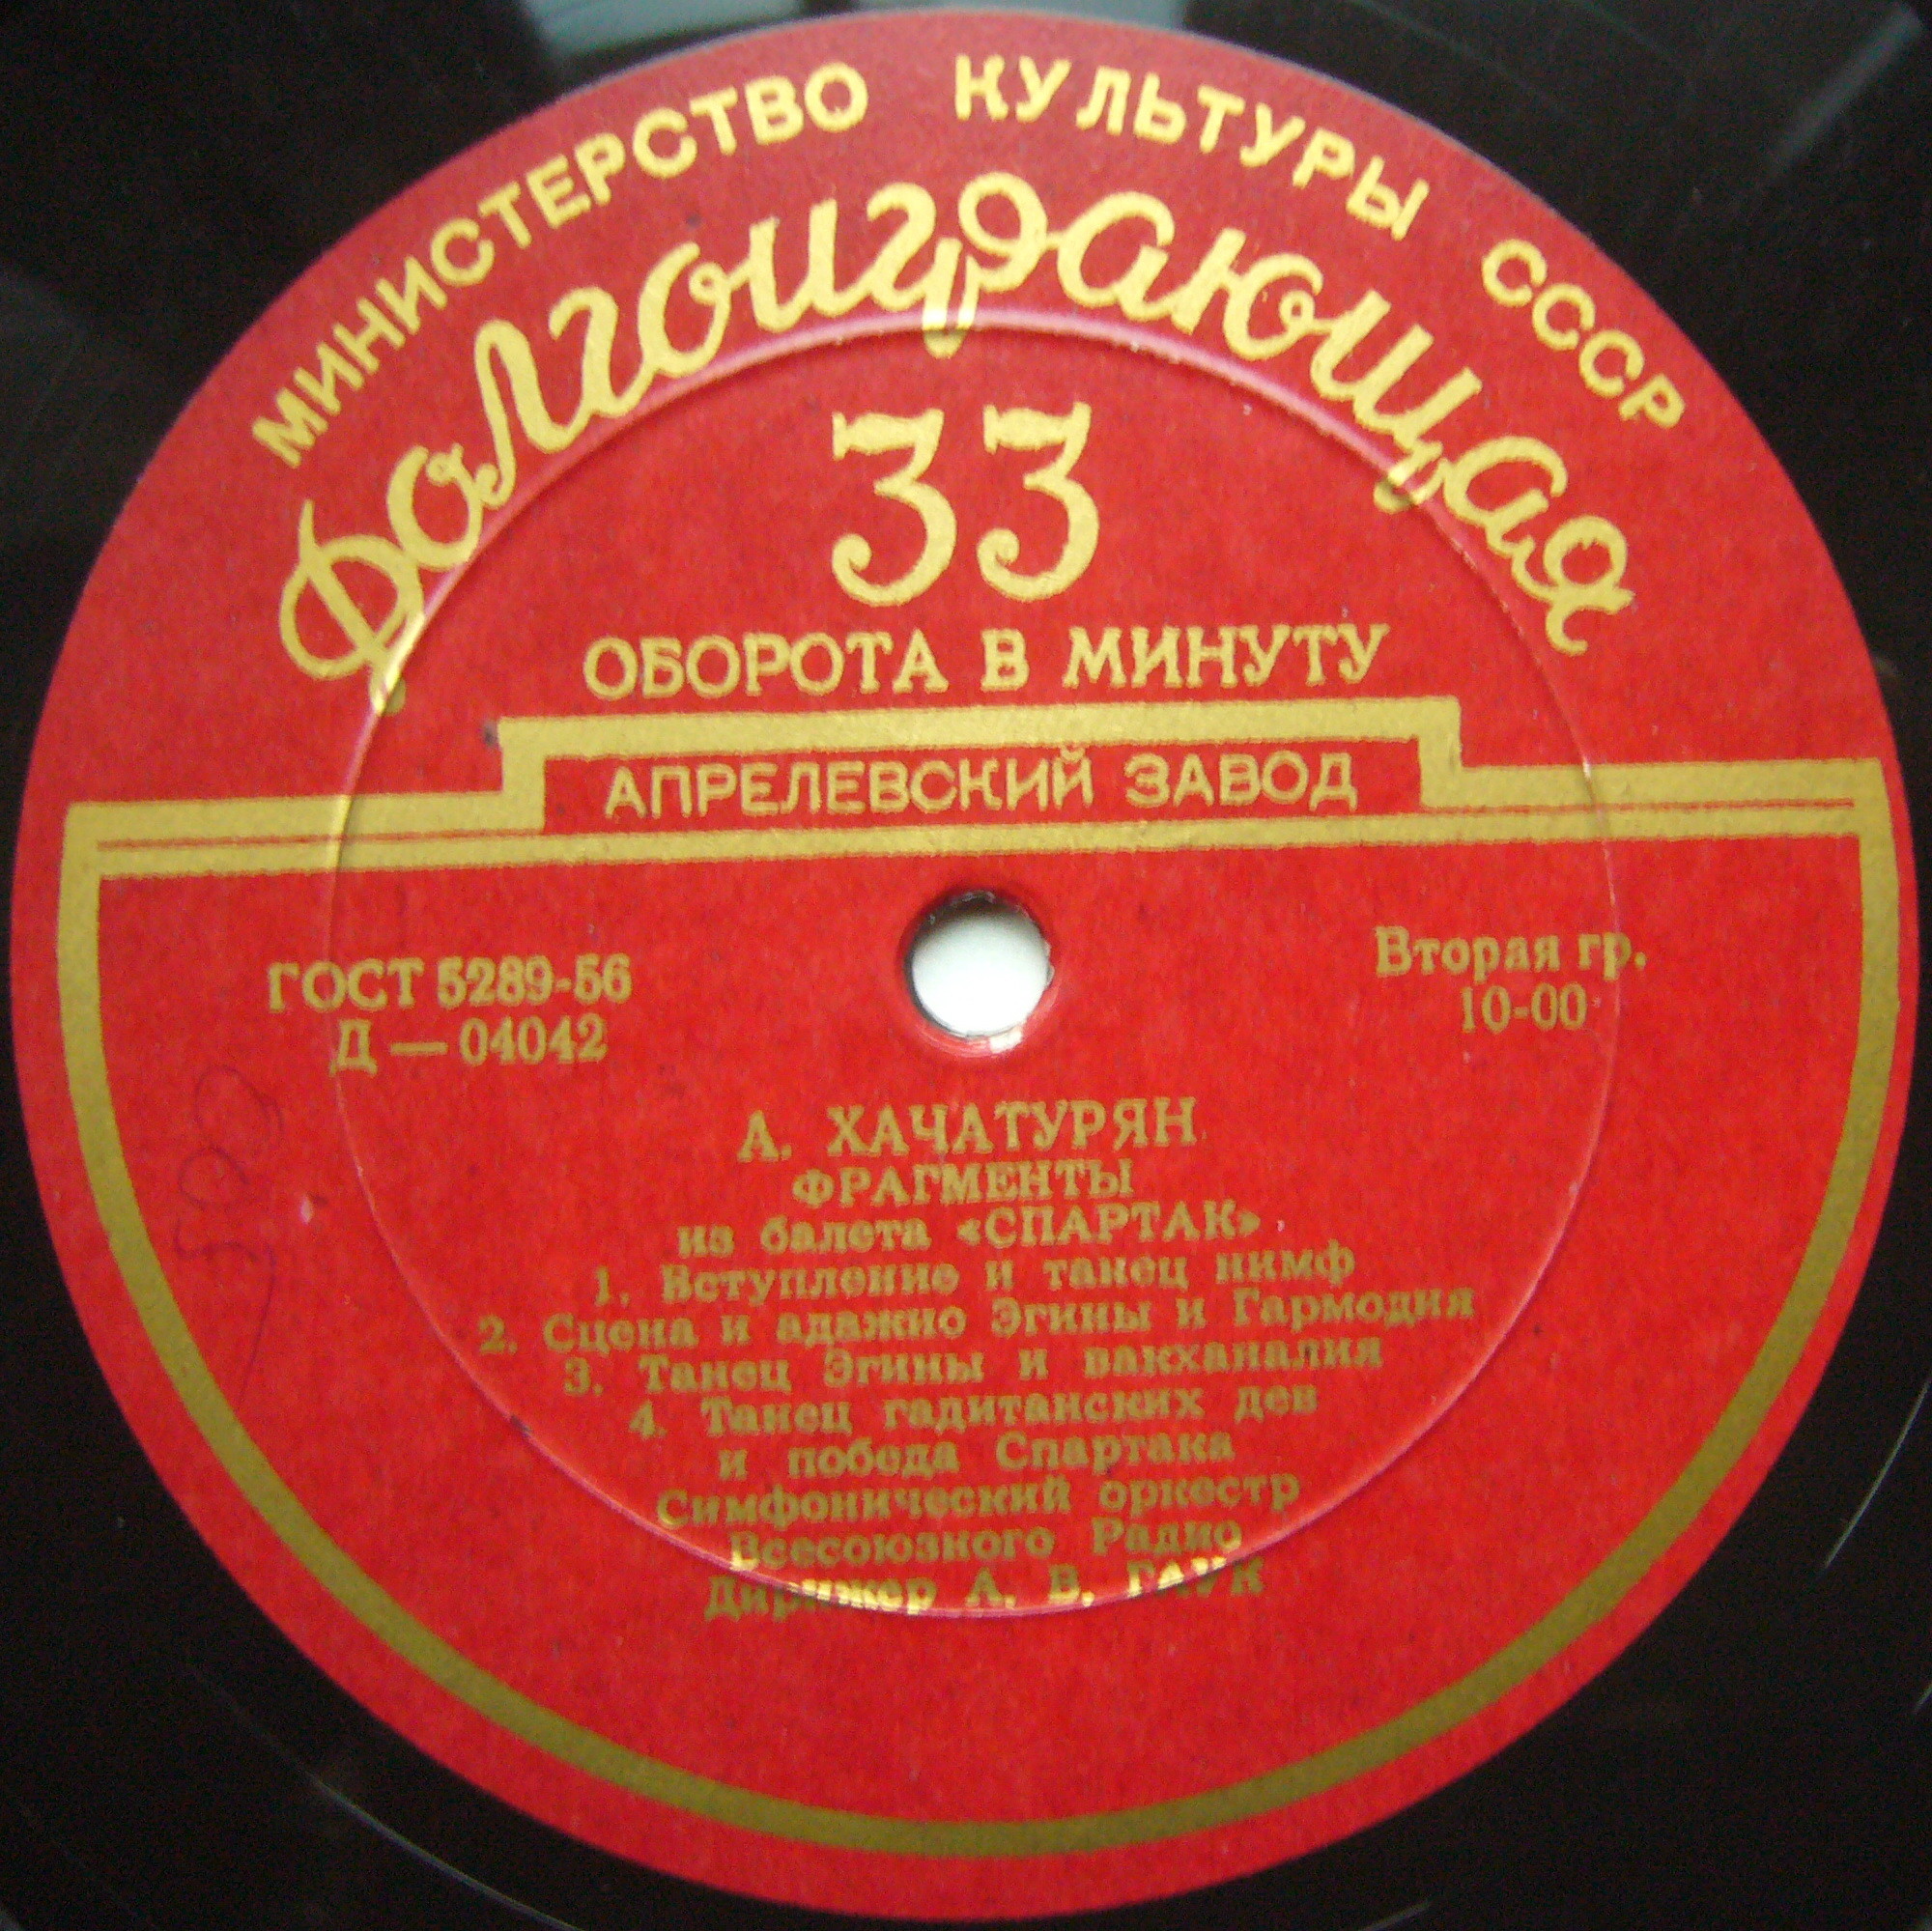 А. ХАЧАТУРЯН (1903–1978): «Спартак», фрагменты из балета (А. Гаук)